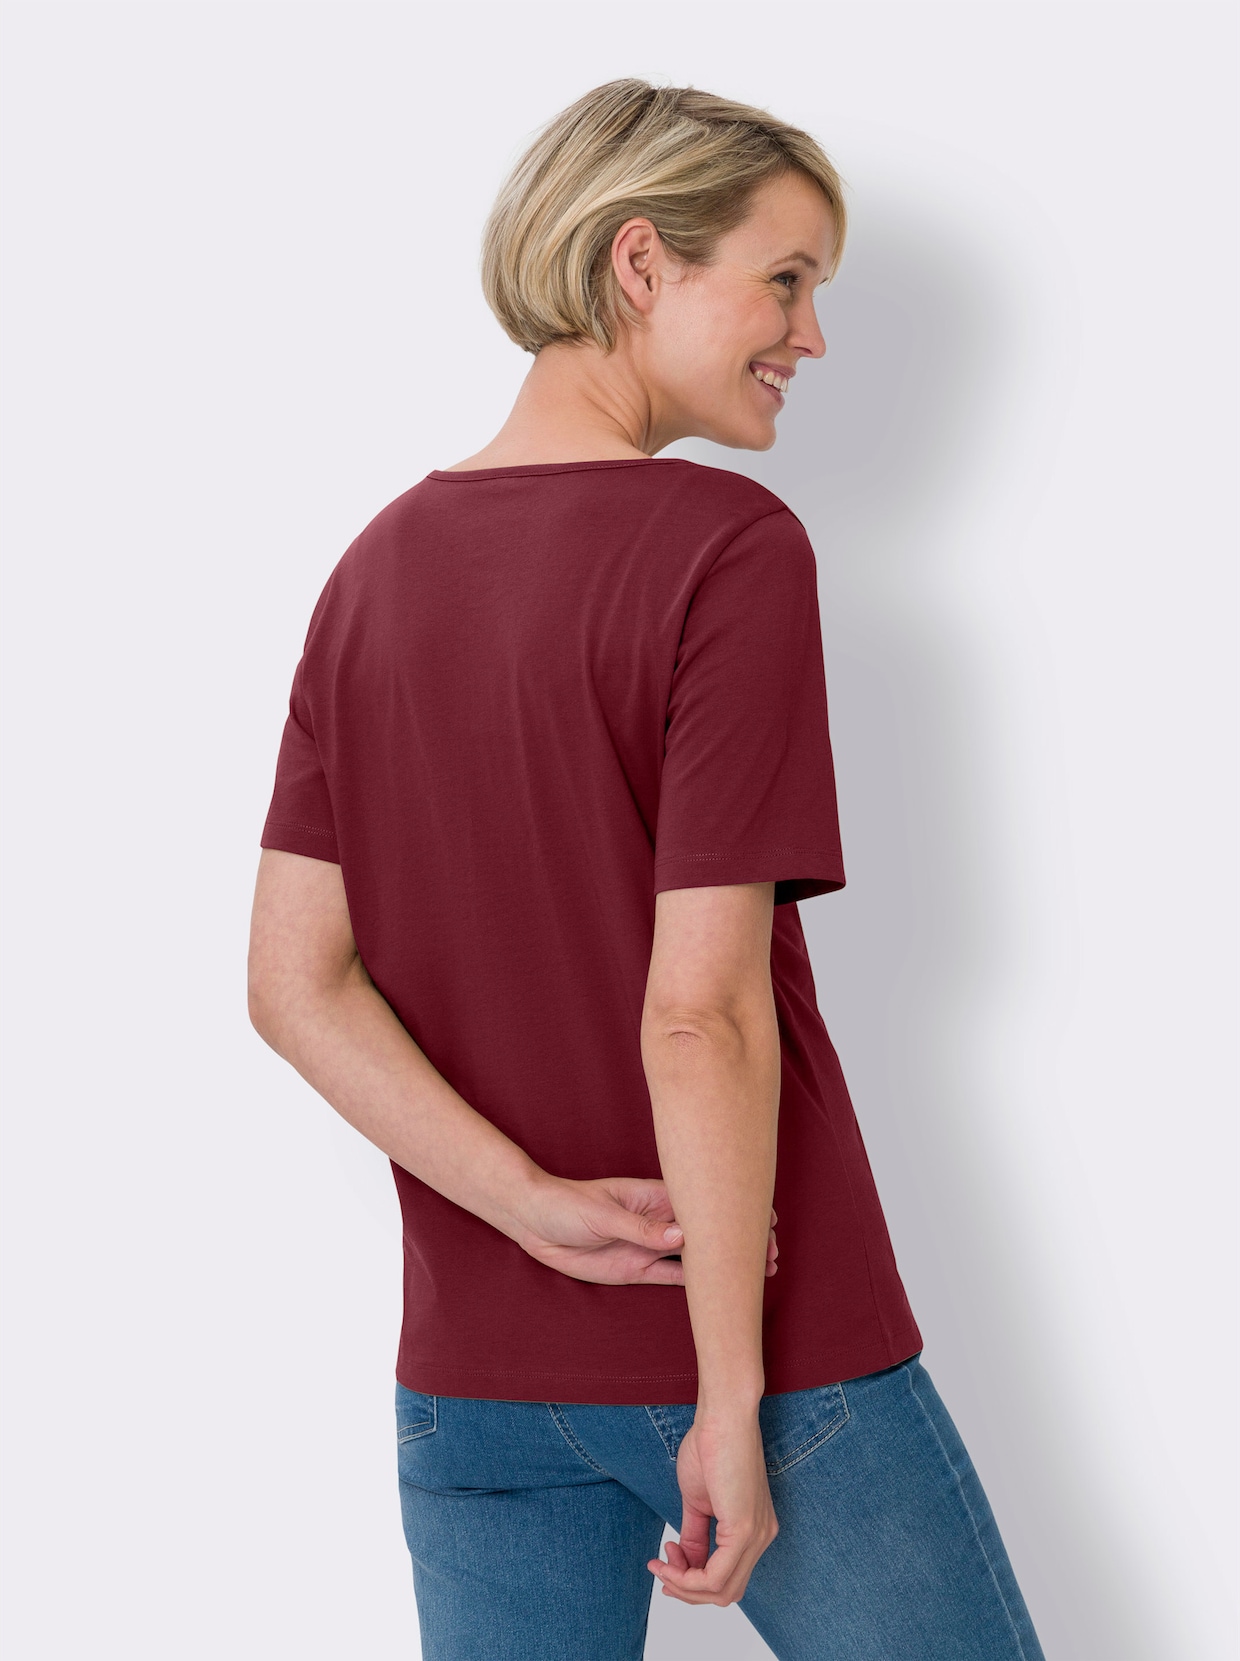 Tričko s krátkým rukávem - tmavěčervená